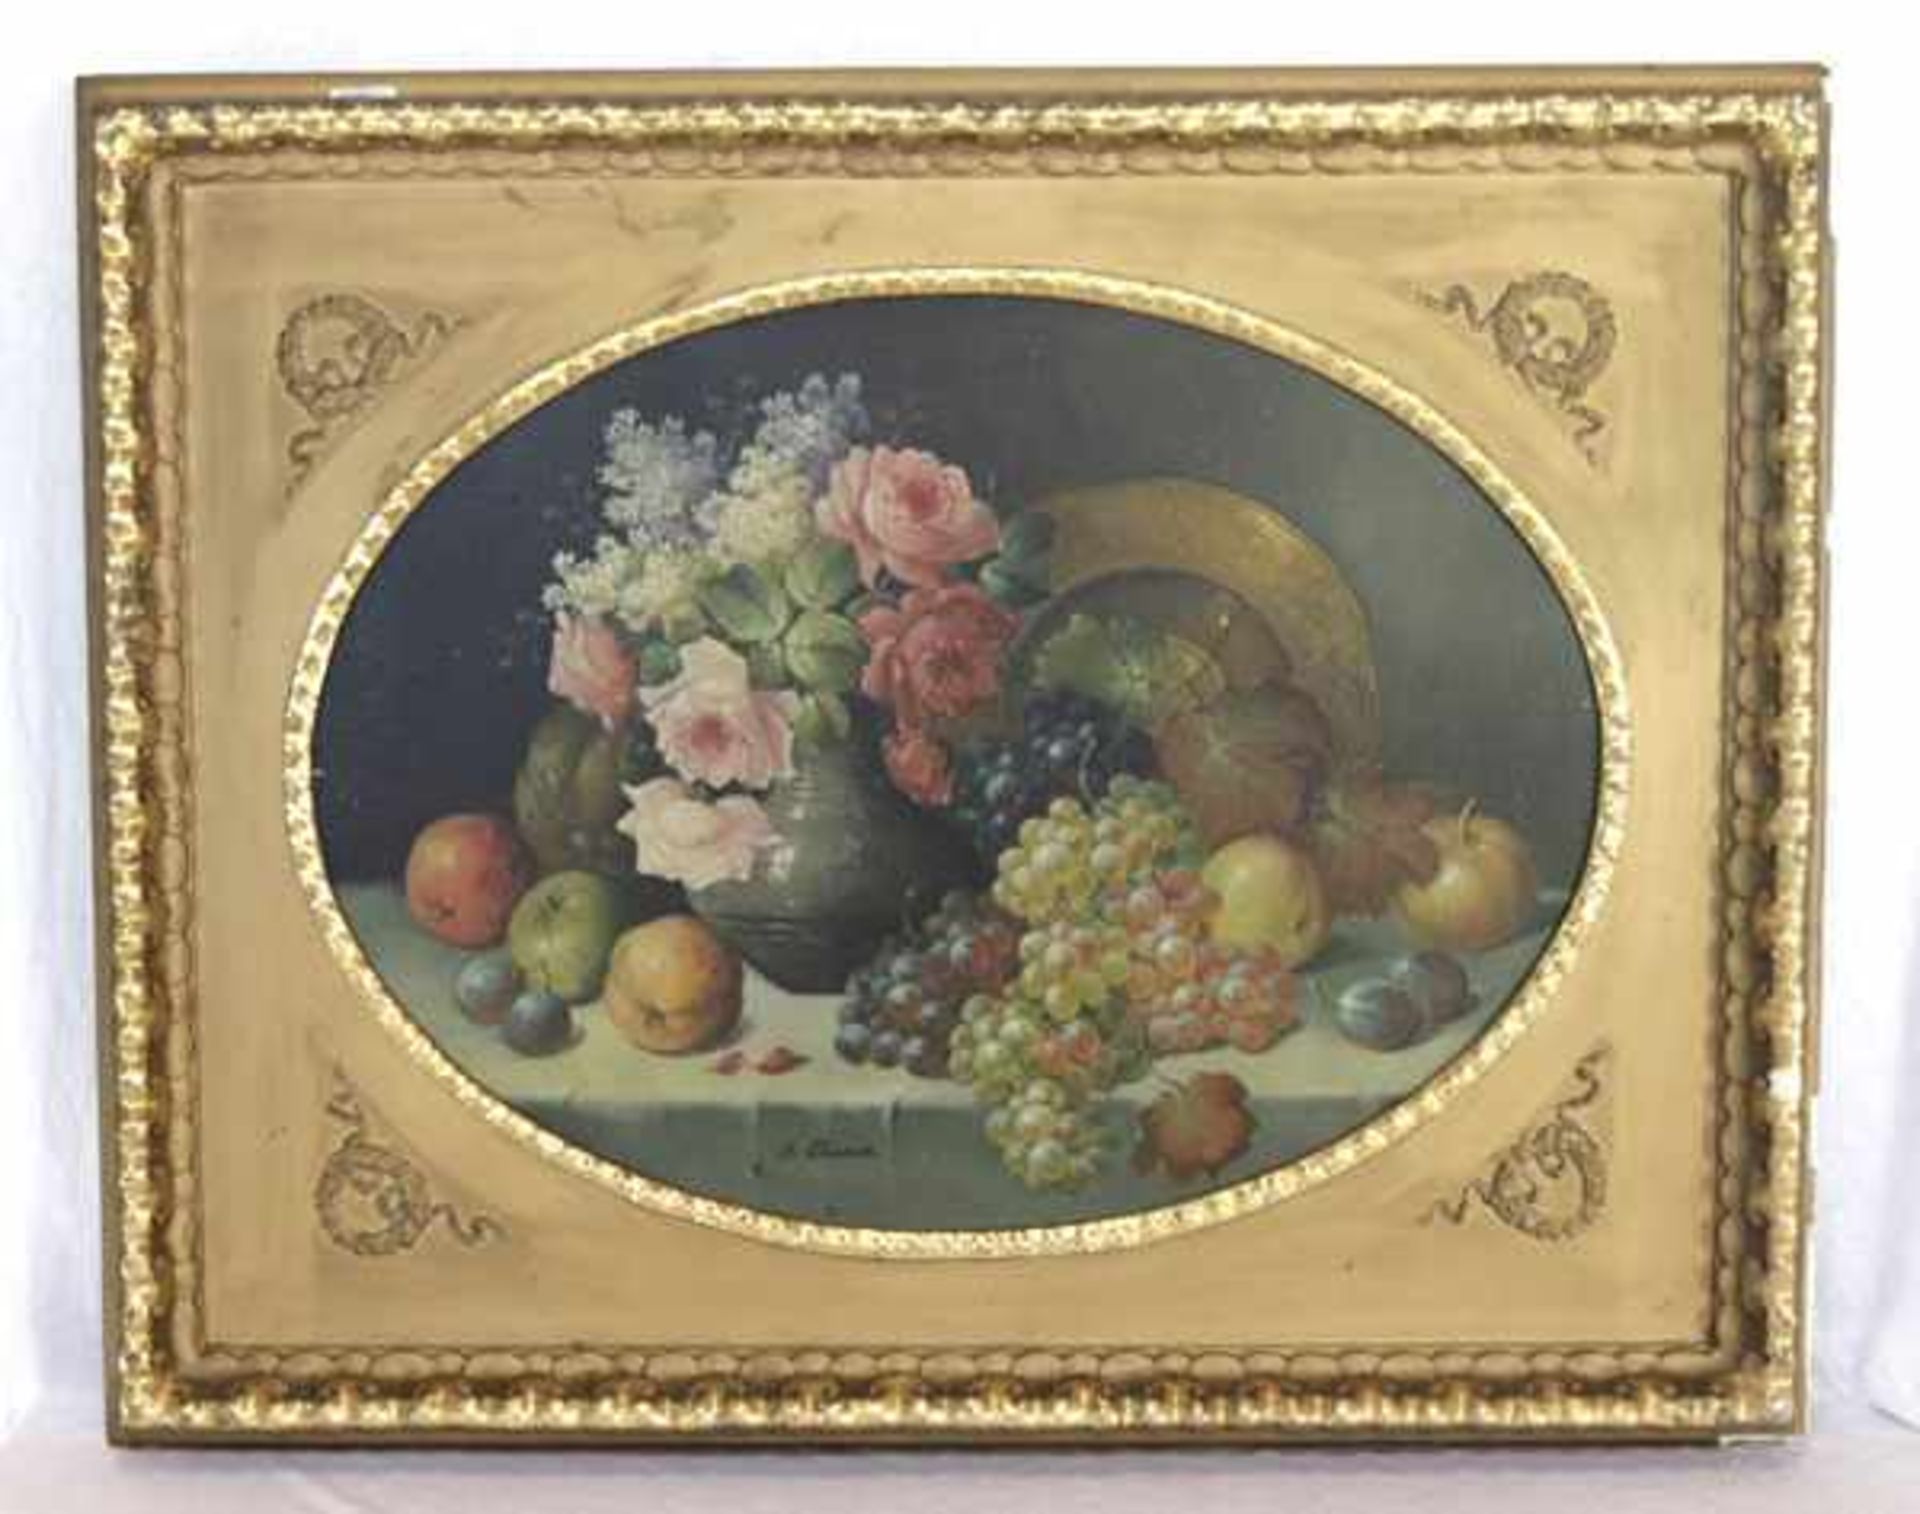 Gemälde ÖL/LW 'Stillleben mit Blumen und Früchten', signiert J. (Josef) Planer, * 1883 + 1962,